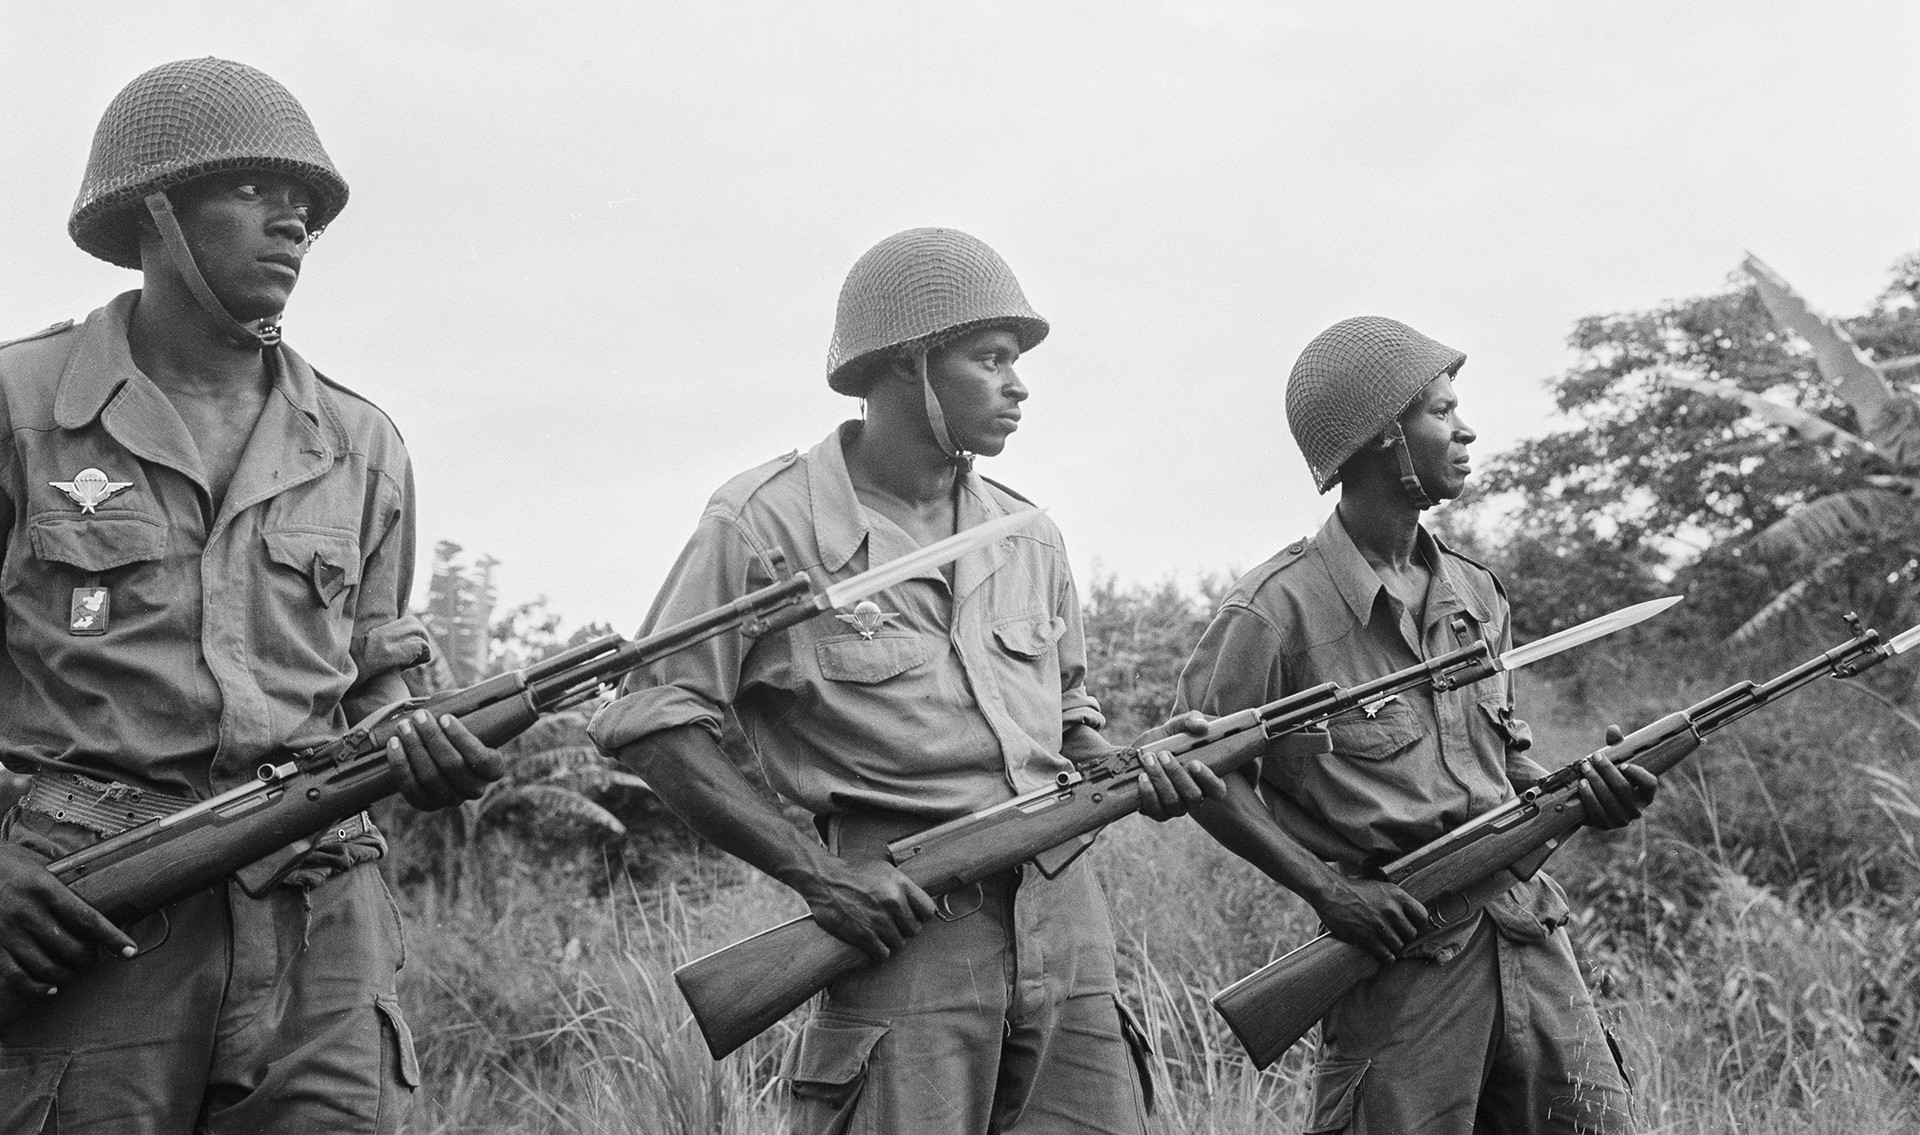 Vojnici narodne vojske Republike Kongo.

